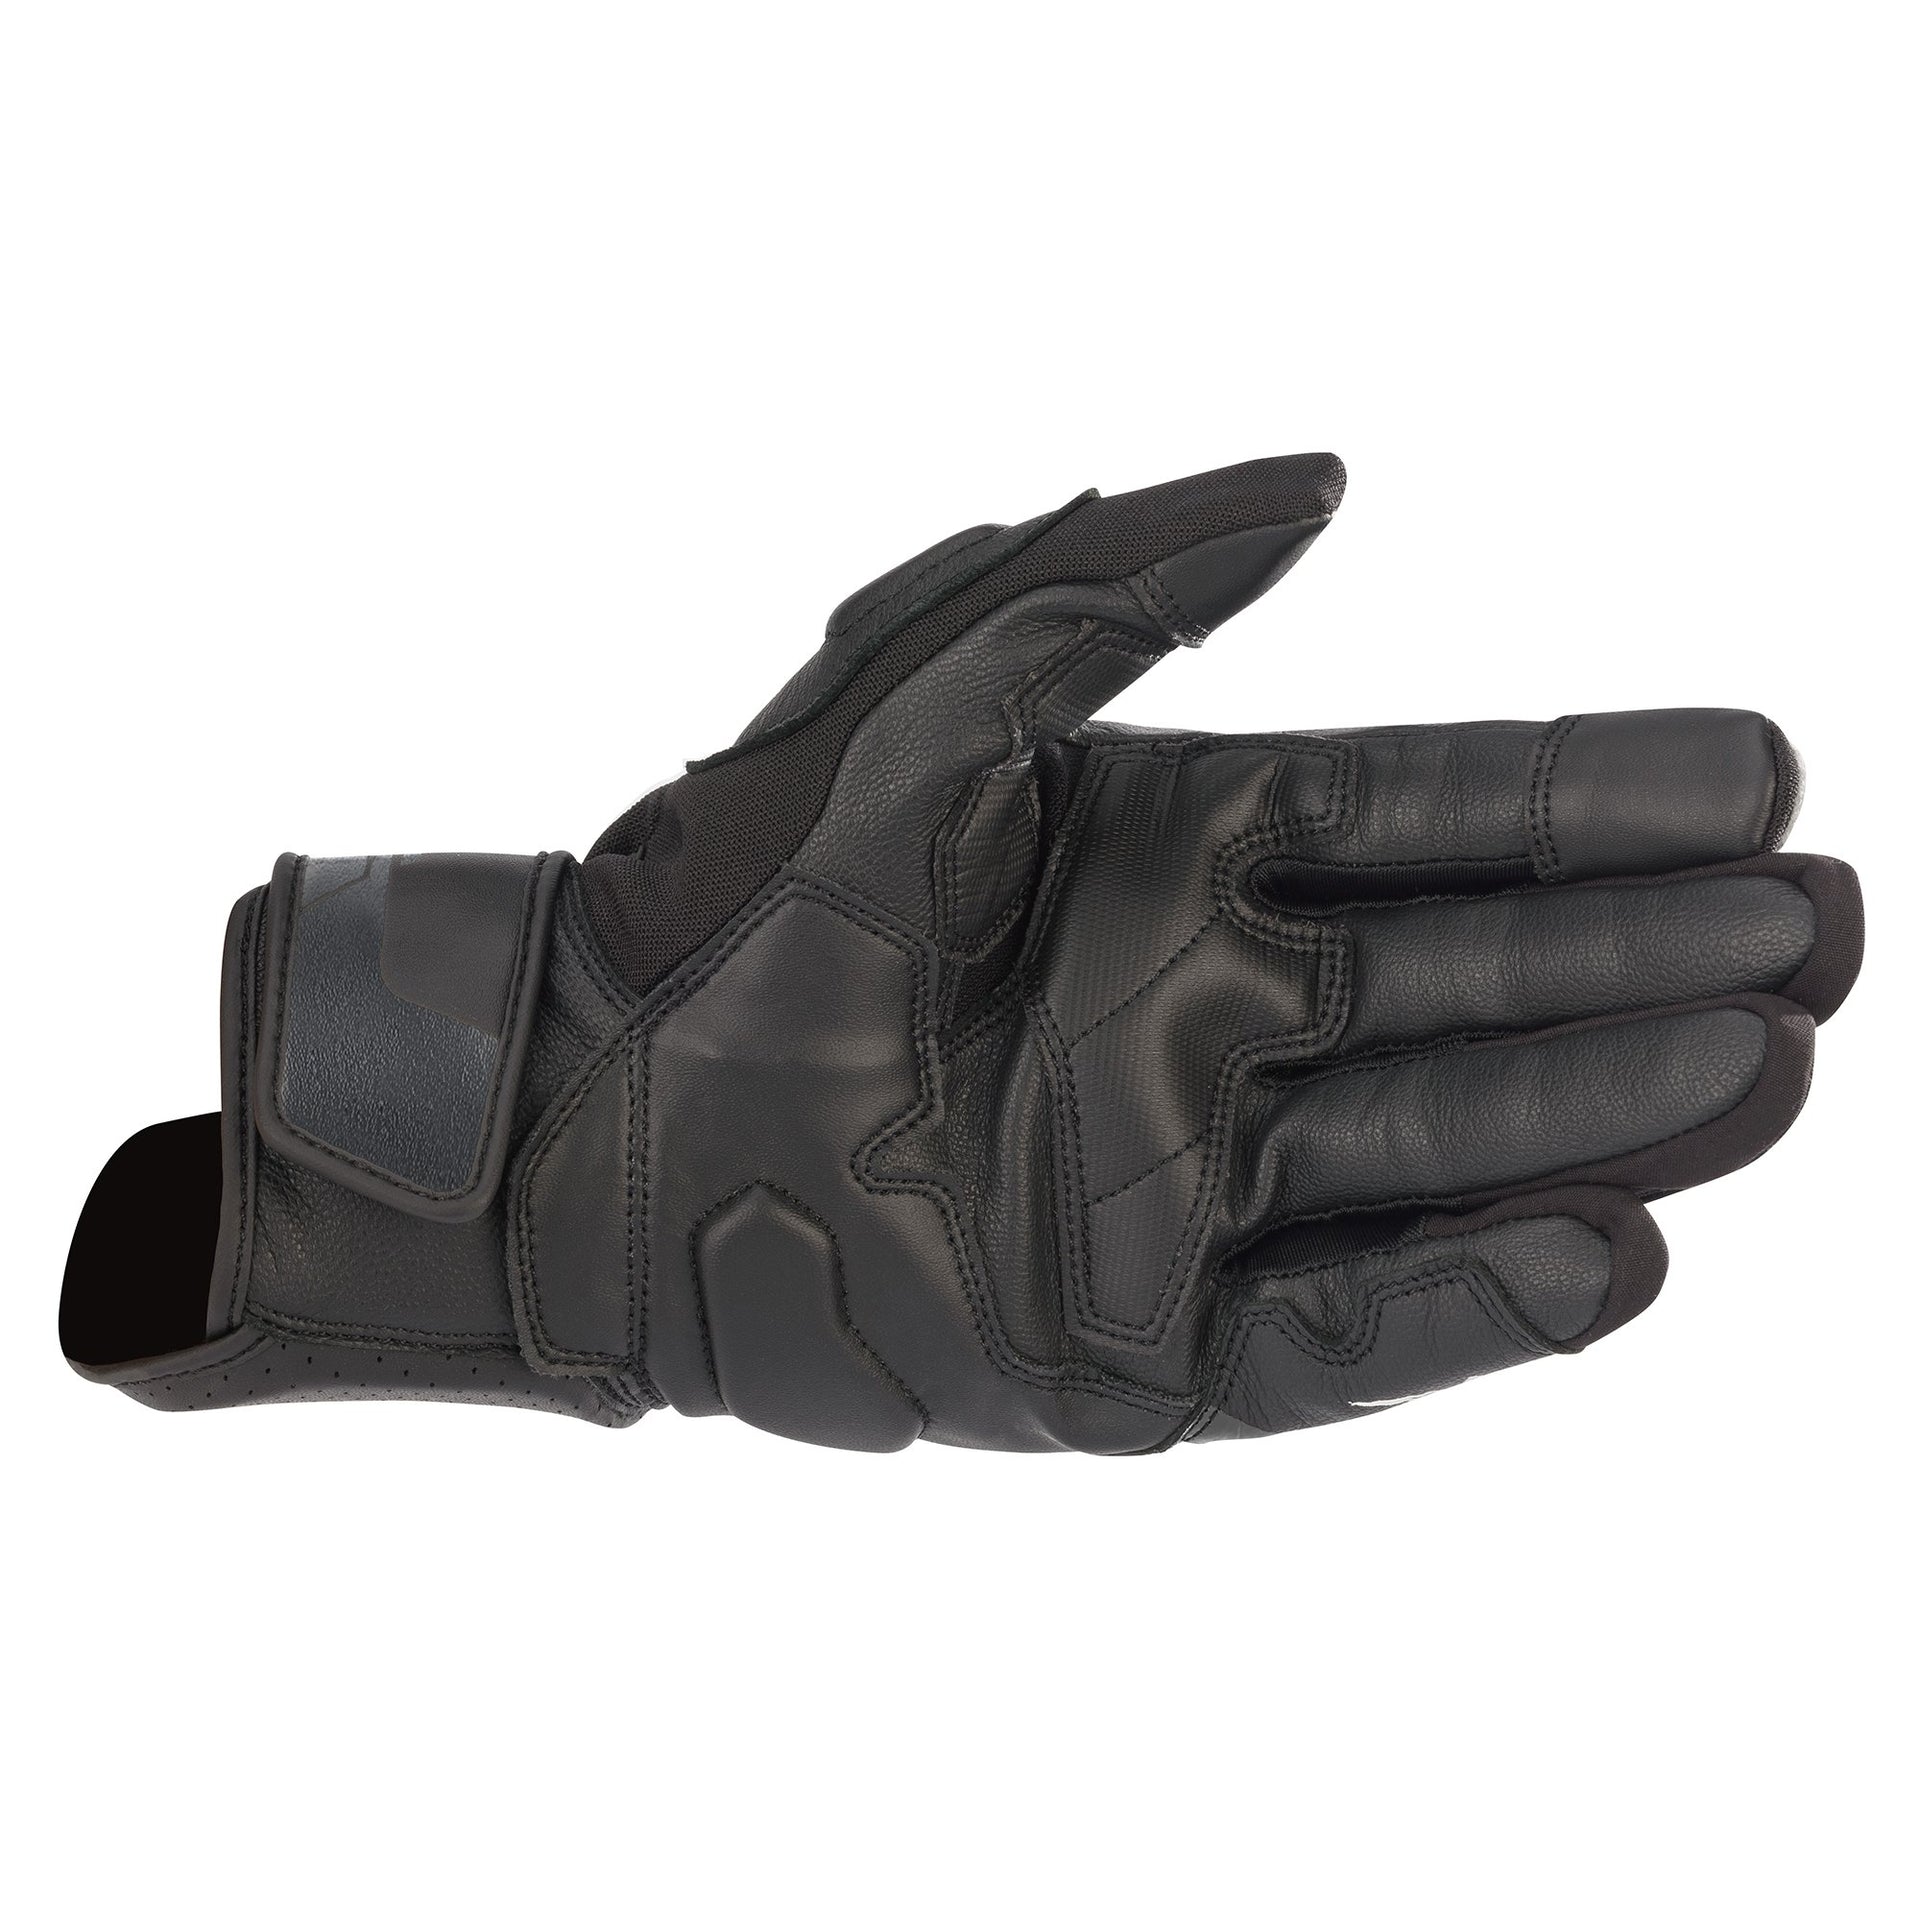 Alpinestars - Booster V2 Gloves